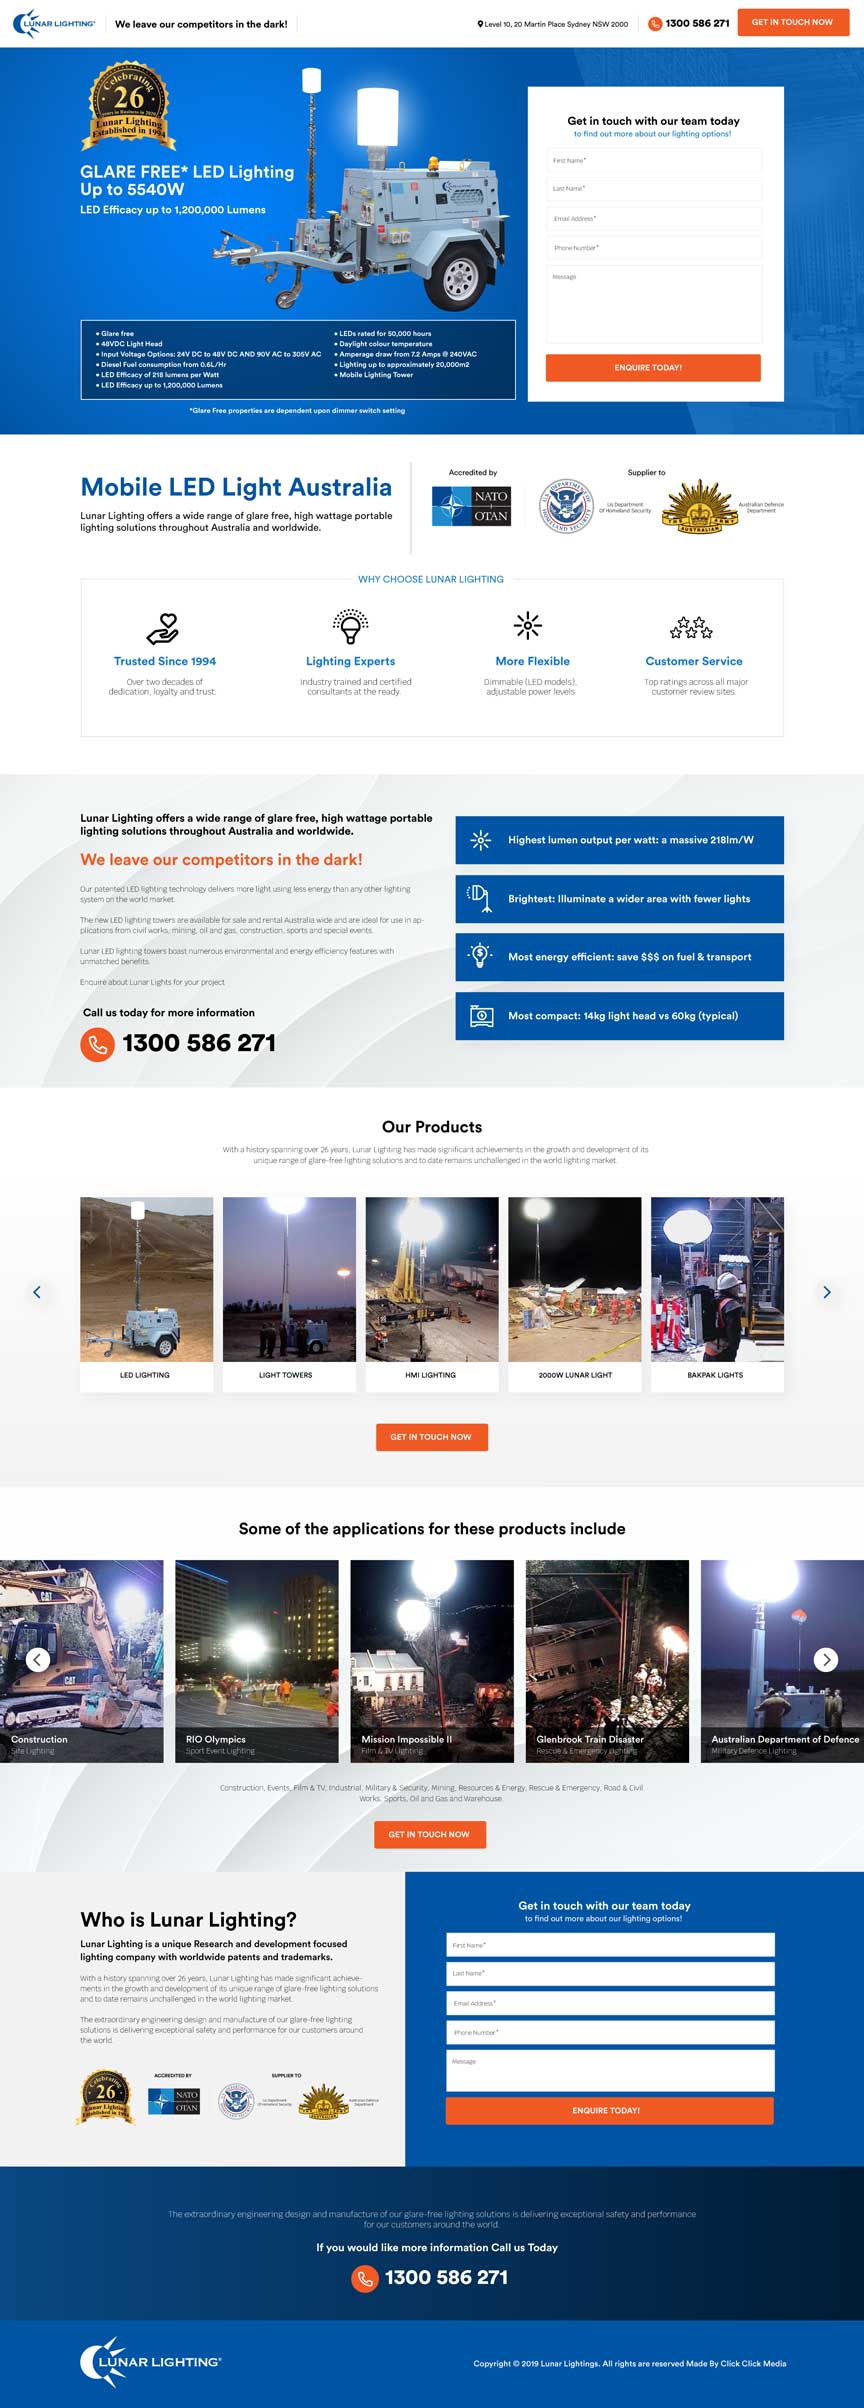 Lunar Lighting website design